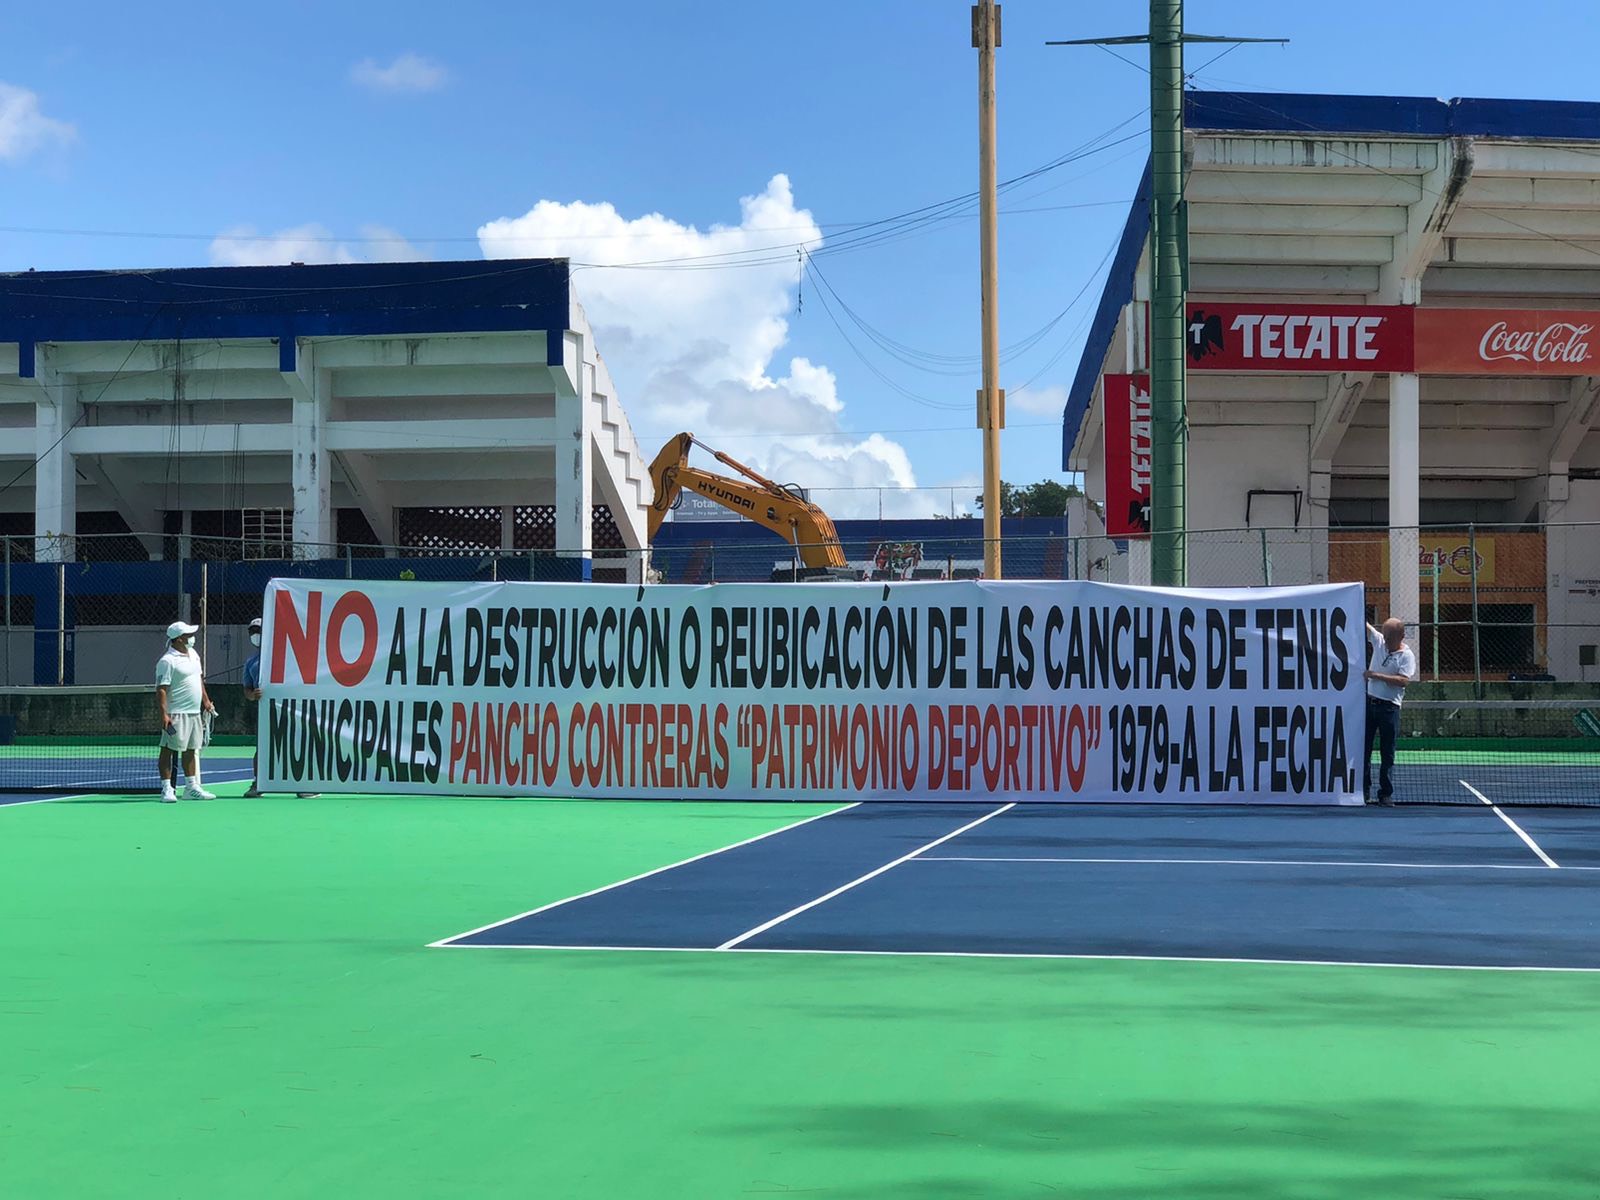 https://cambio22.info/bajo-protestas-inicia-la-demolicion-del-estadio-beto-avila/